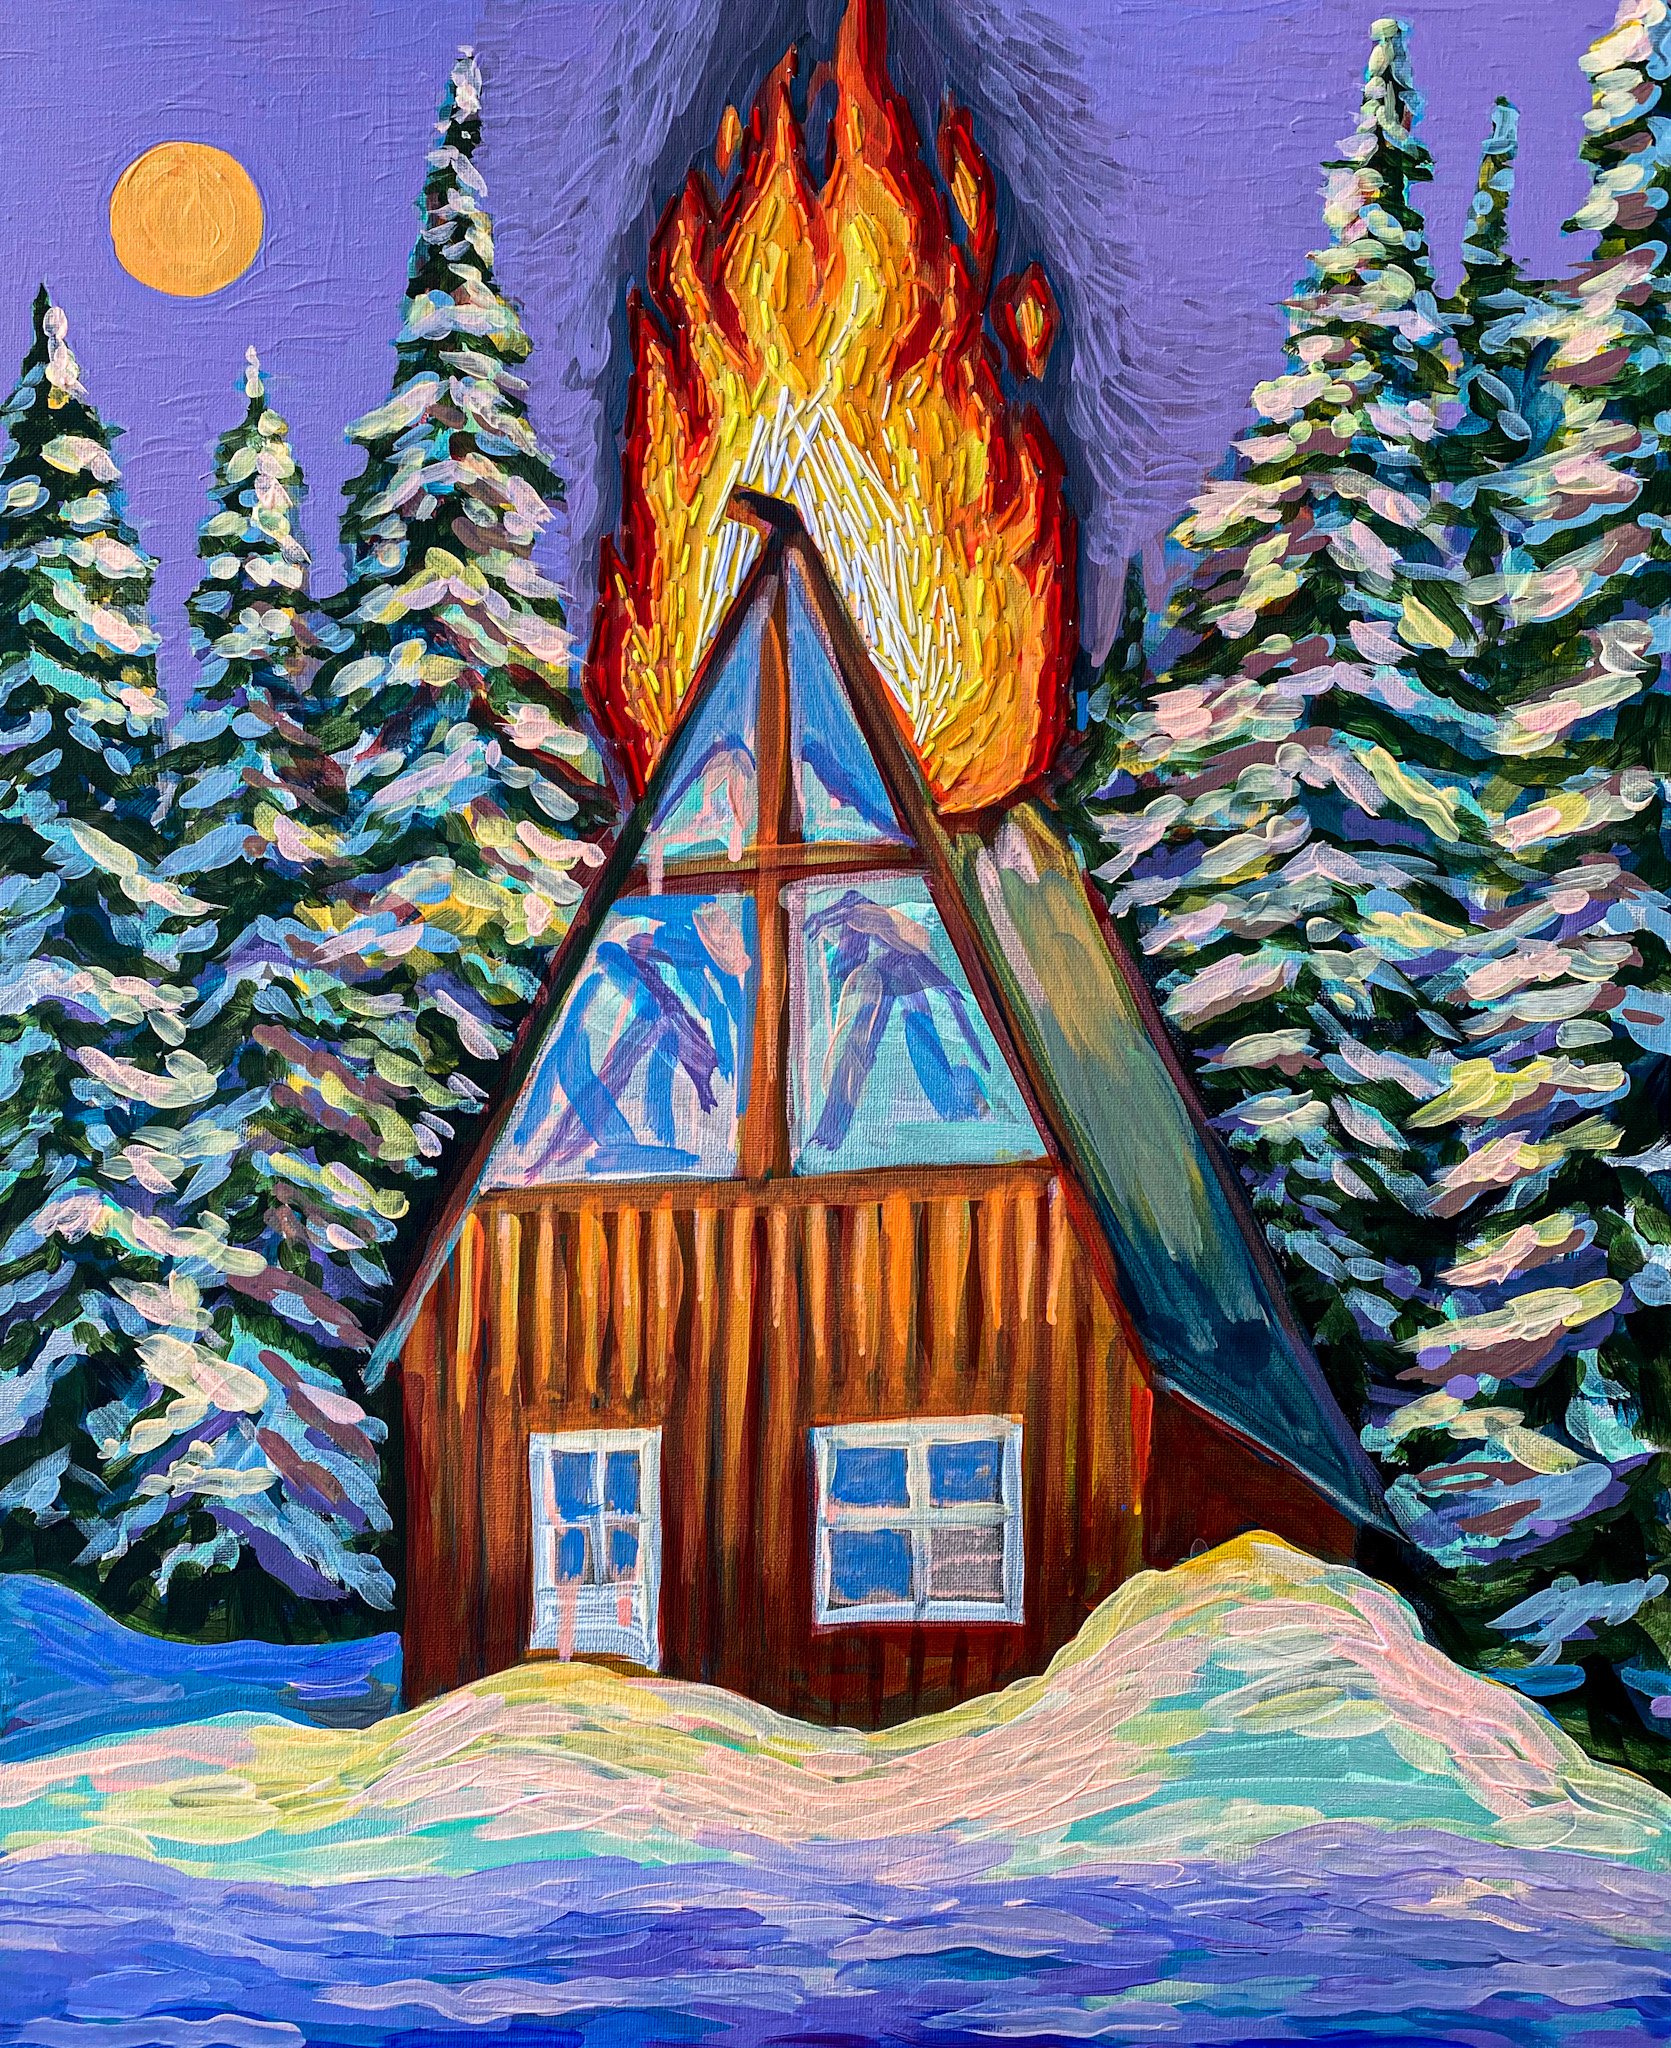 Cabin on Fire